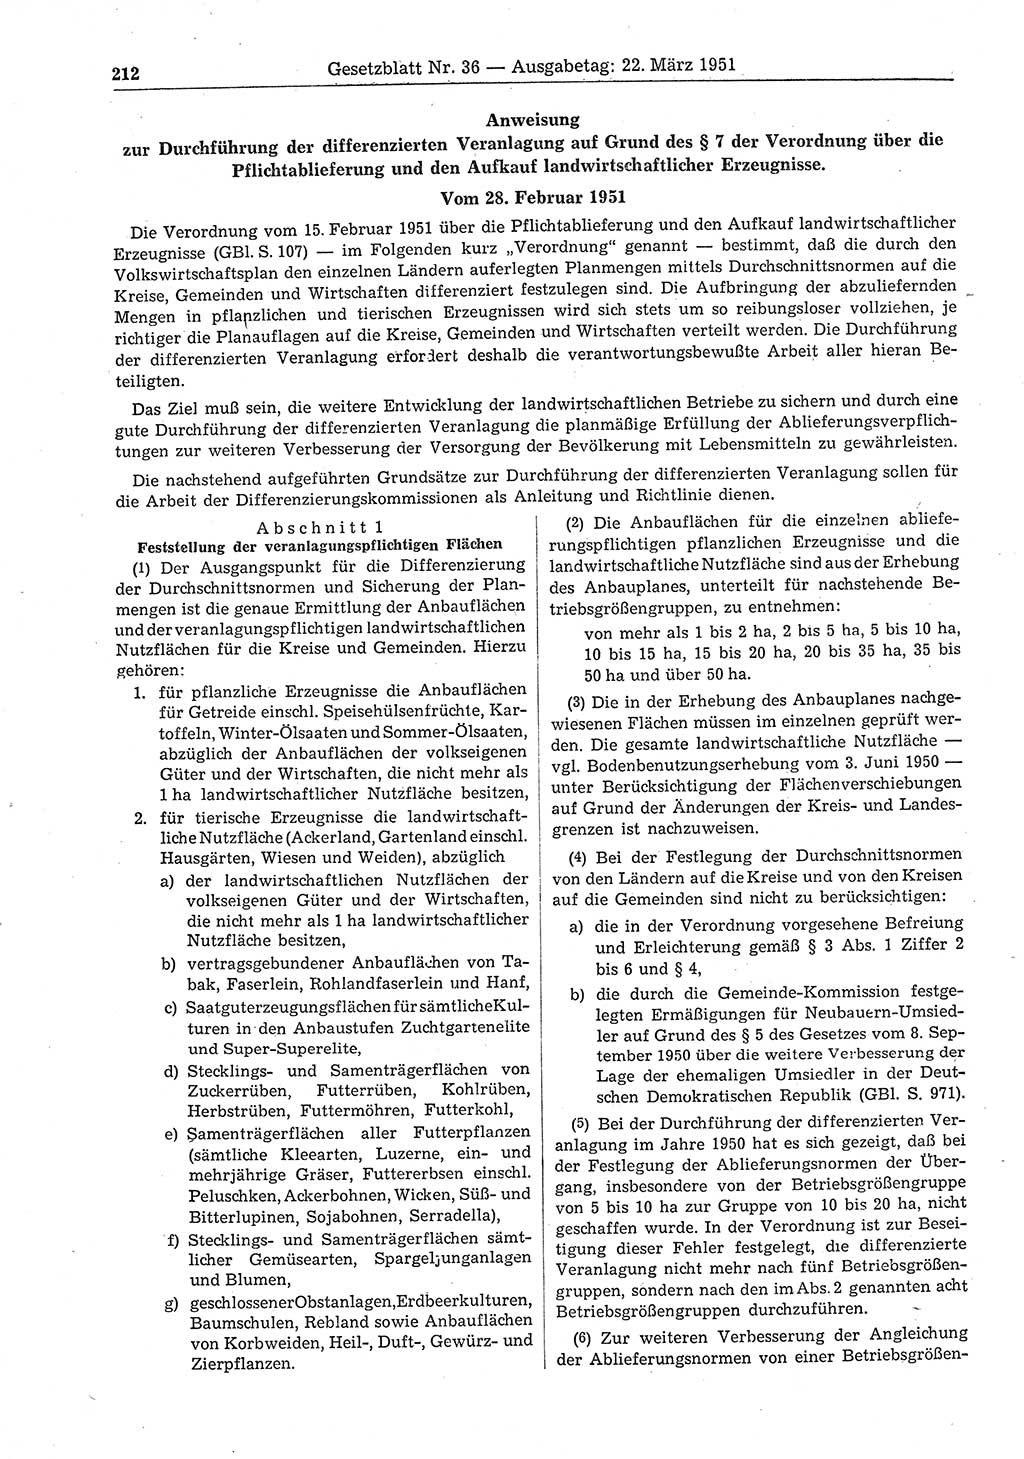 Gesetzblatt (GBl.) der Deutschen Demokratischen Republik (DDR) 1951, Seite 212 (GBl. DDR 1951, S. 212)